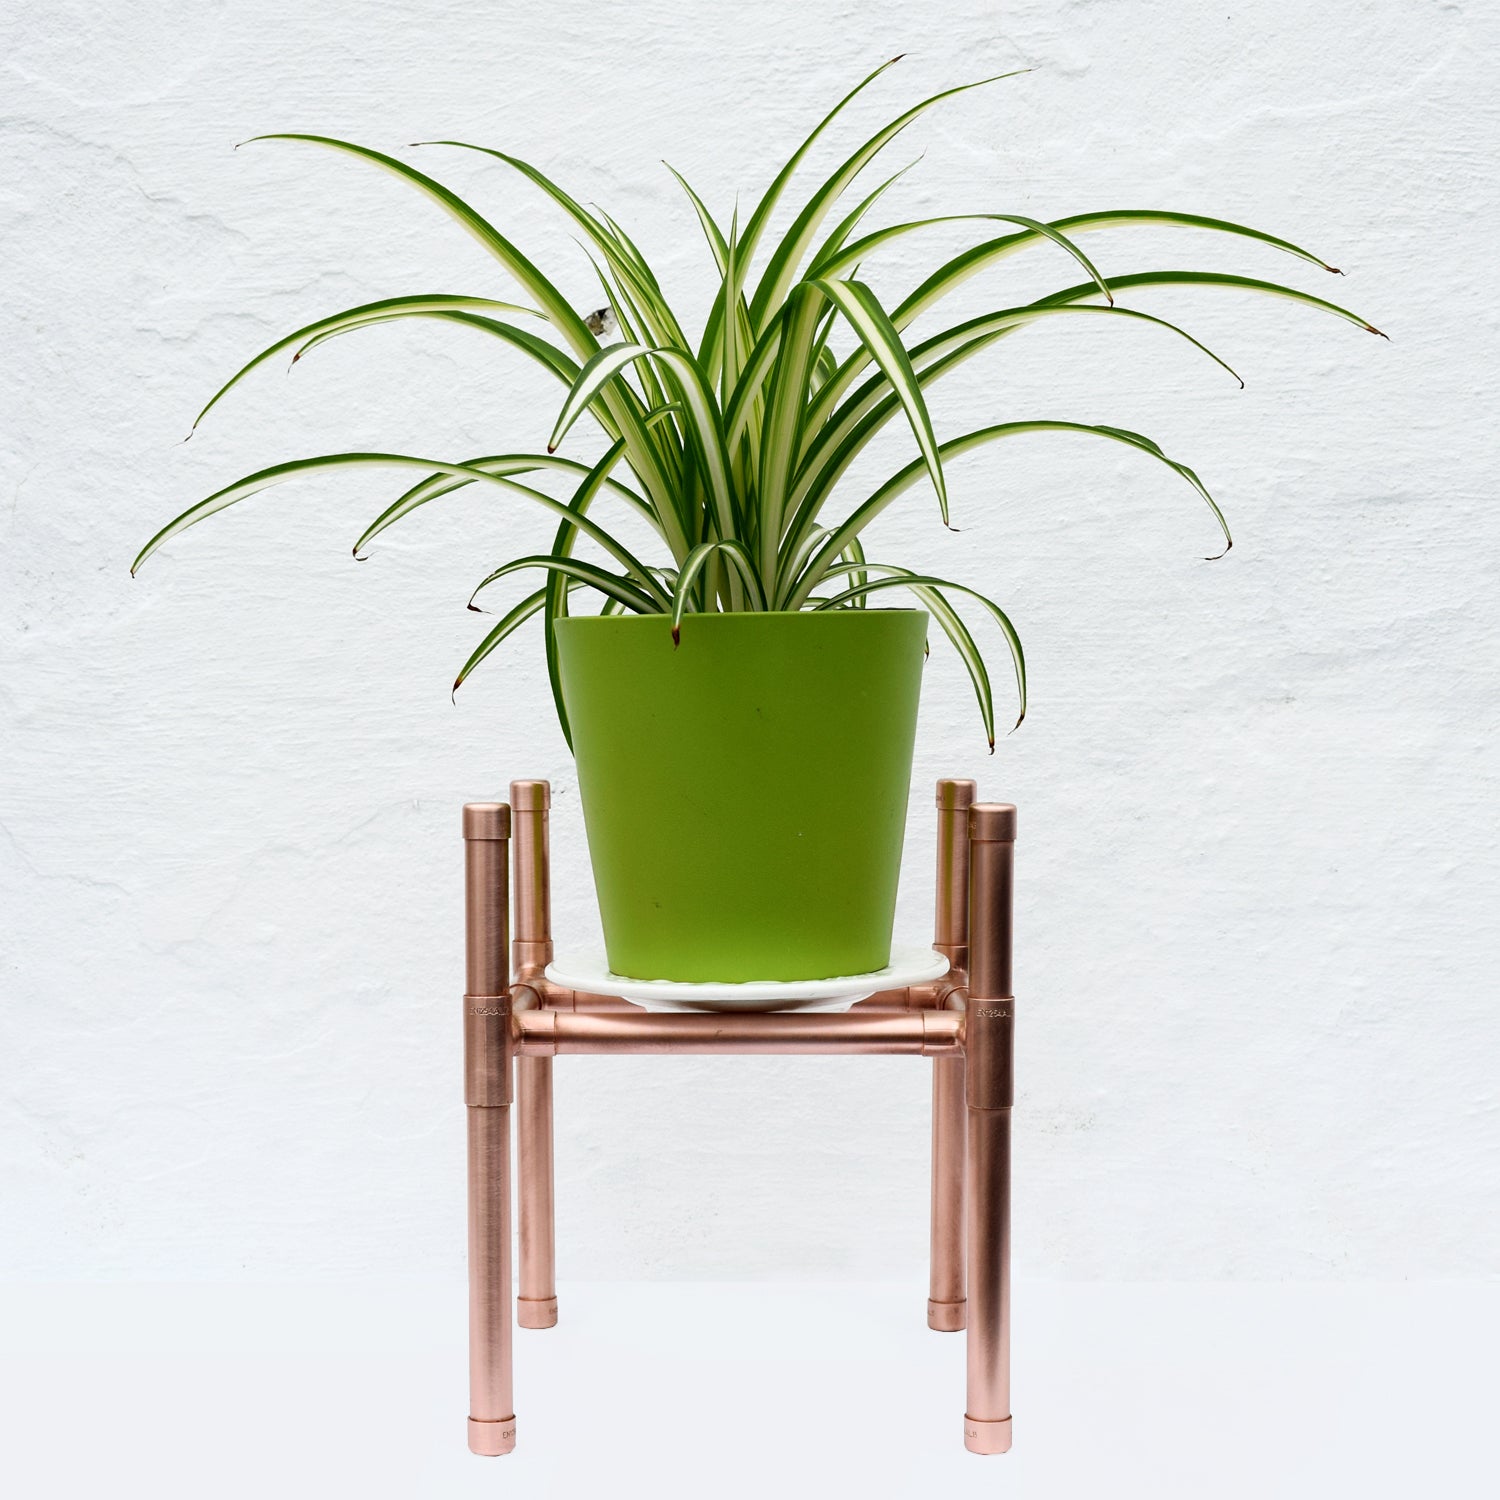 Handmade Copper Plant Stand - Proper Copper Design